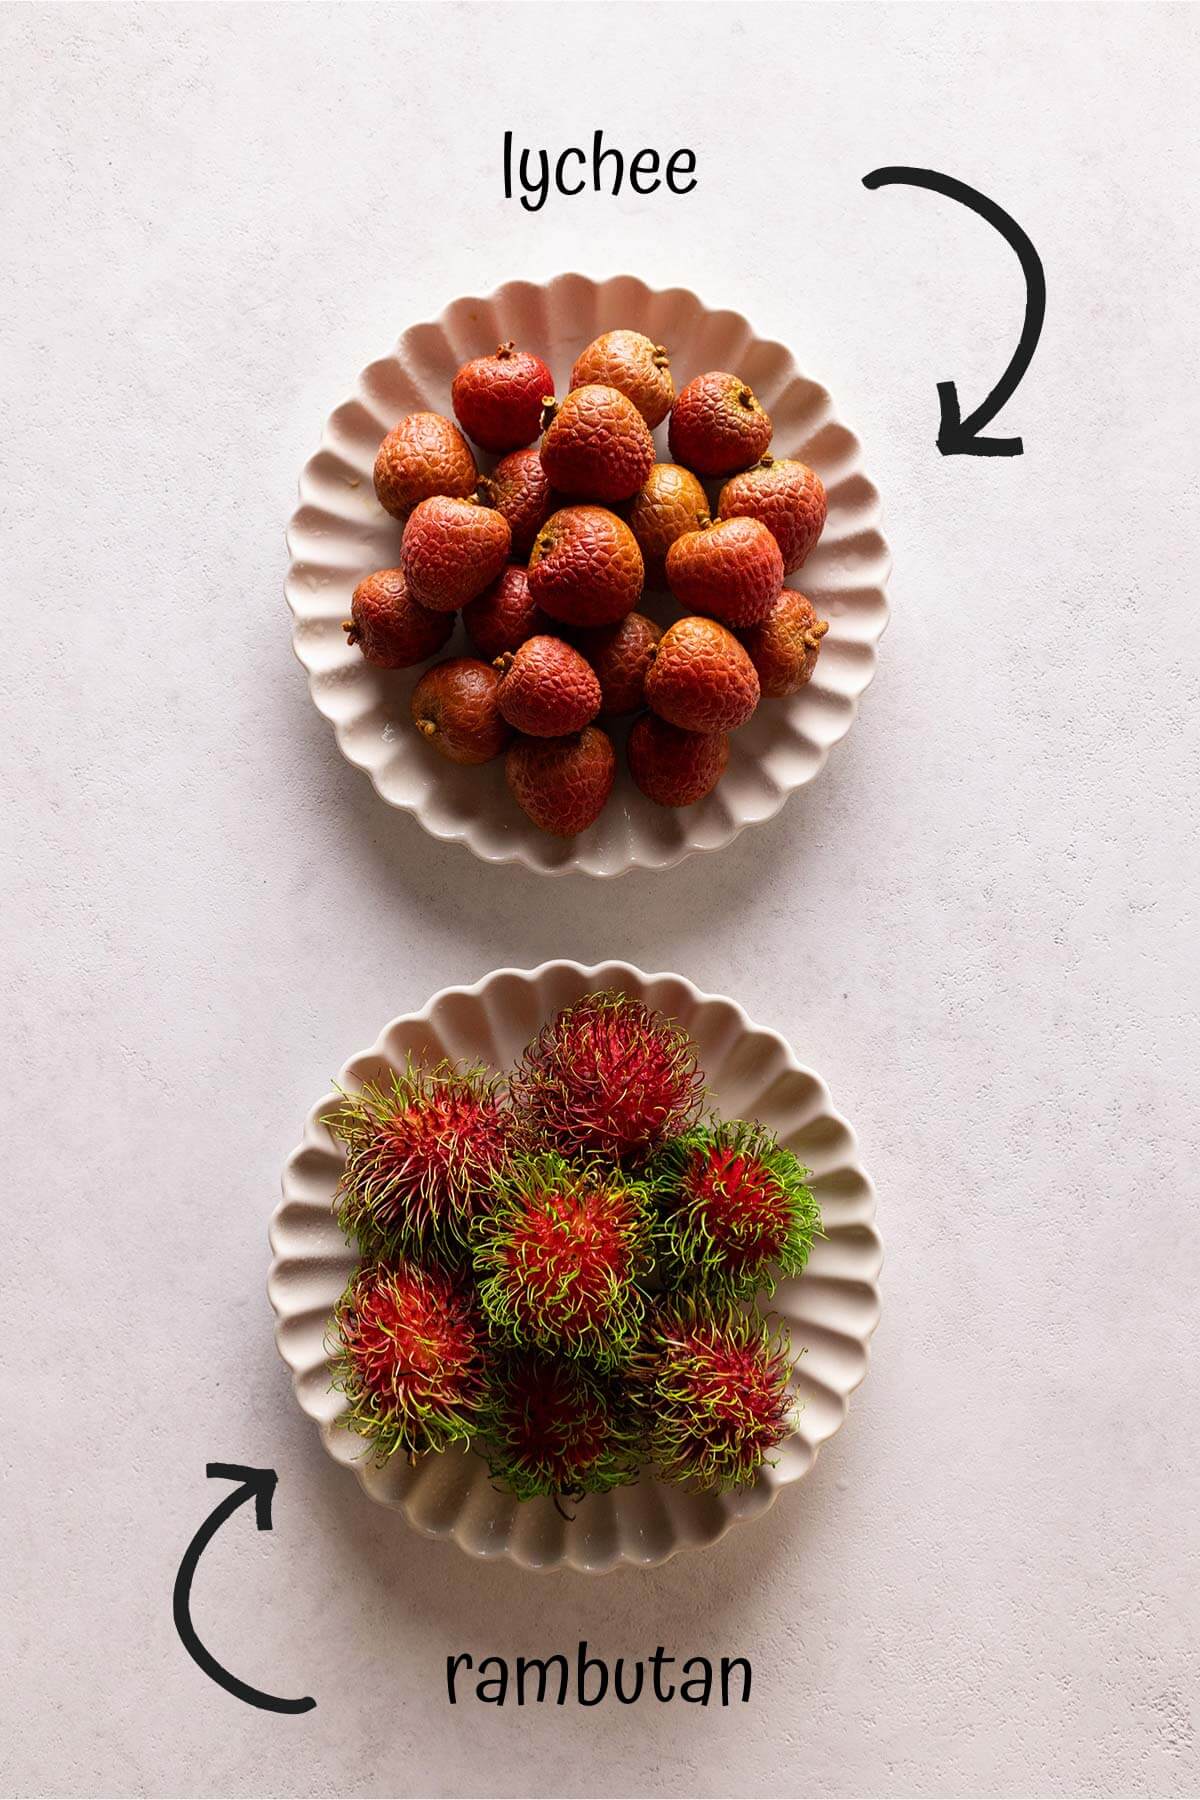 a dish of lychee and a dish of rambutan